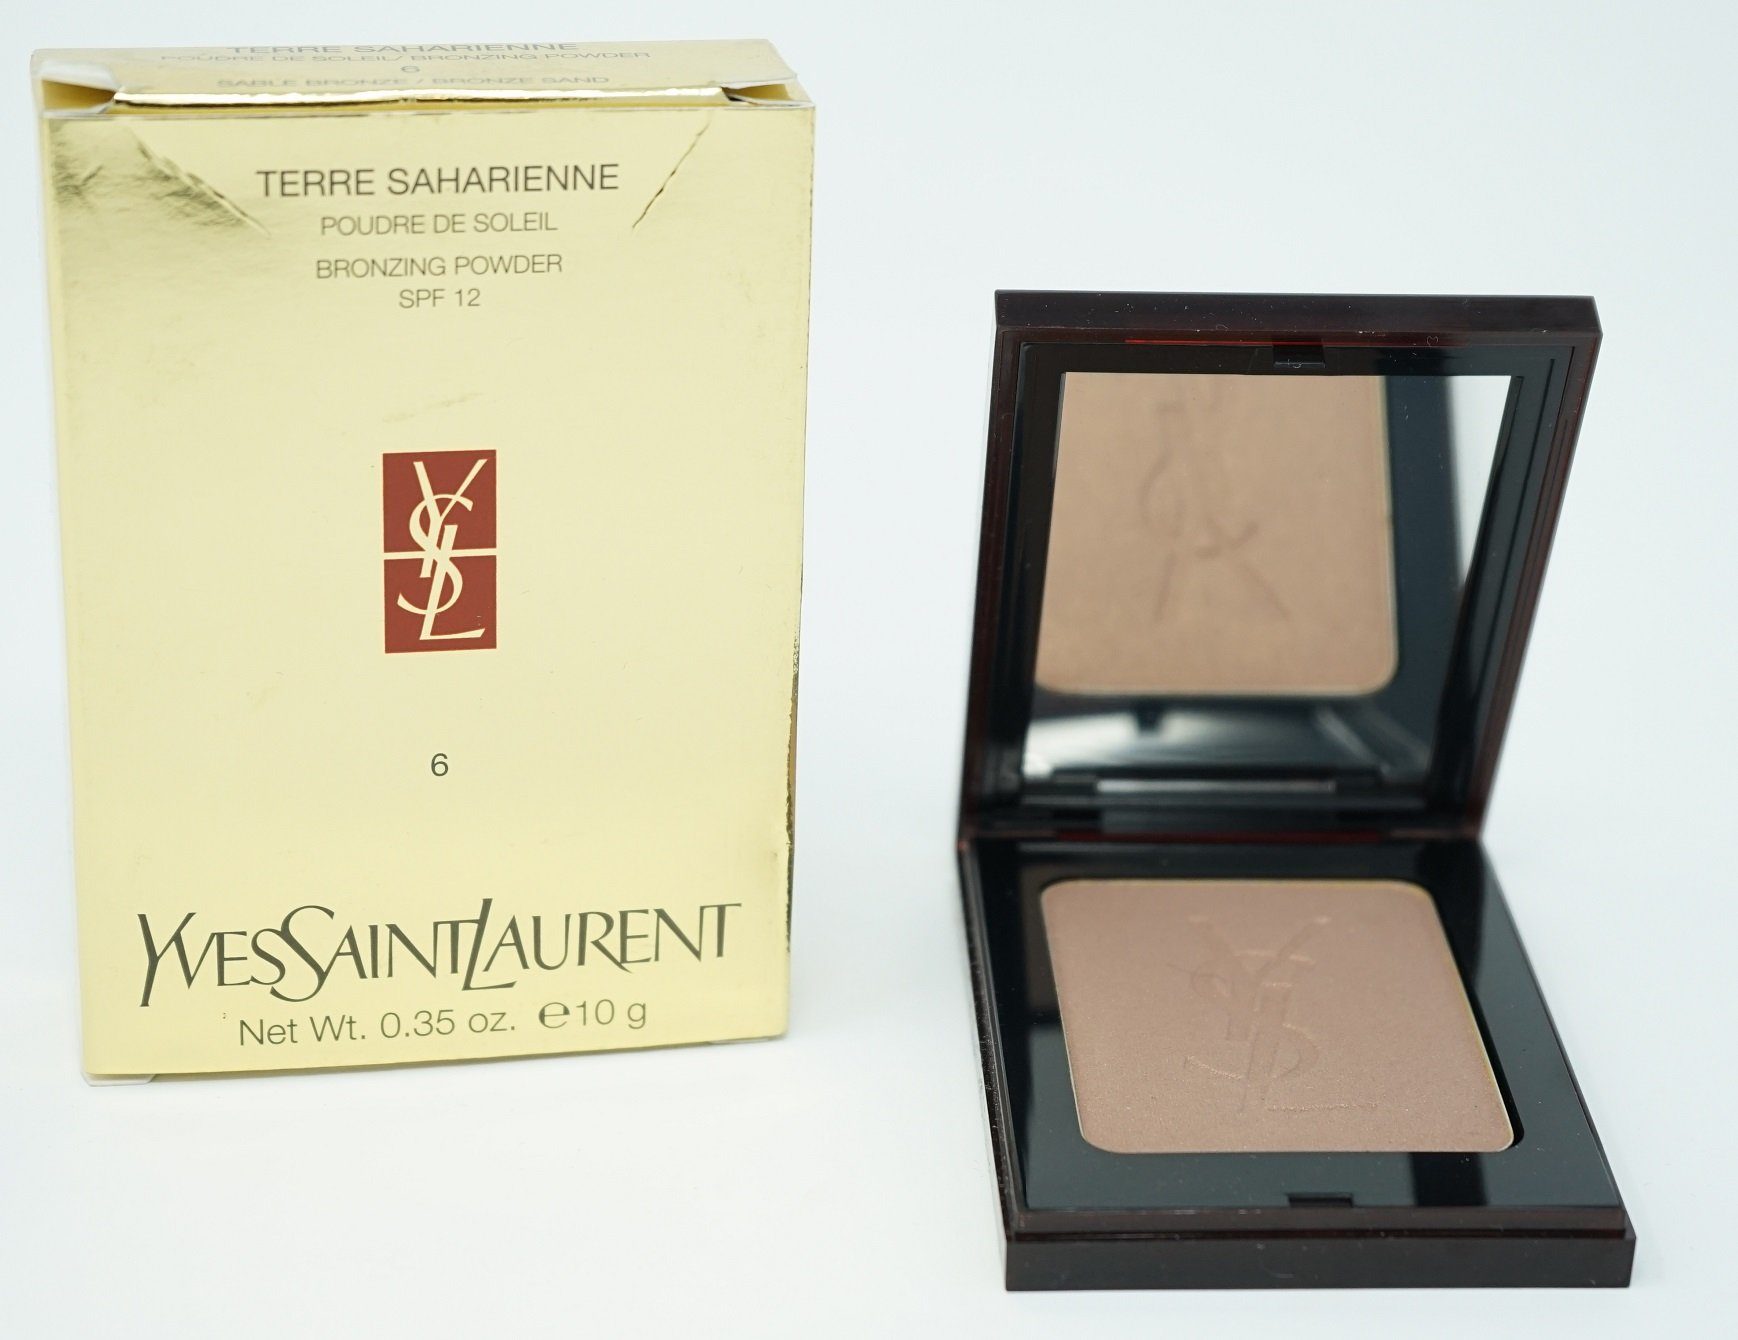 YVES SAINT LAURENT Make-up Yves Saint Laurent SPF 12 Terre Saharienne 10g /6 Sable Bronze